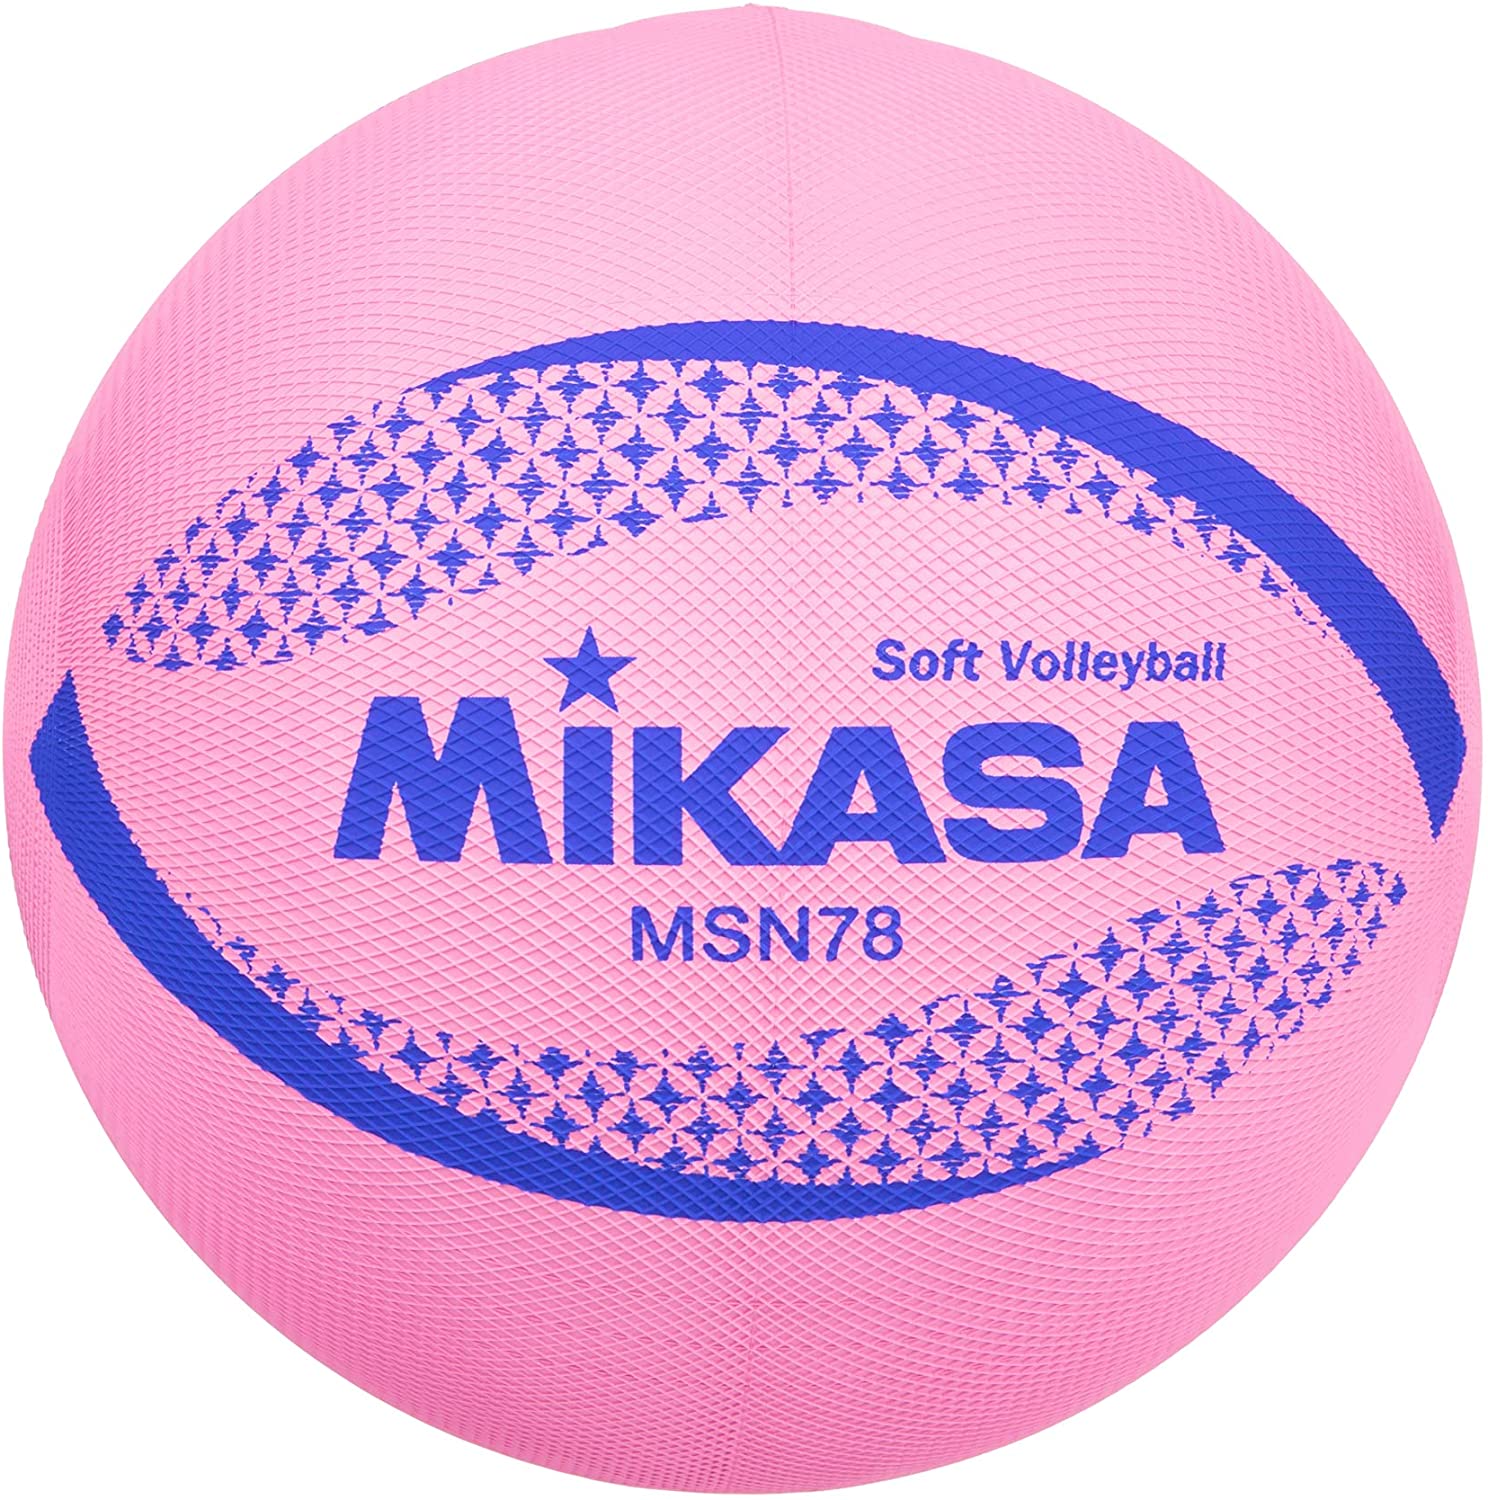 ミカサ(MIKASA) カラーソフトバレーボール 円周78cm 検定球(ピンク)MSN78-P